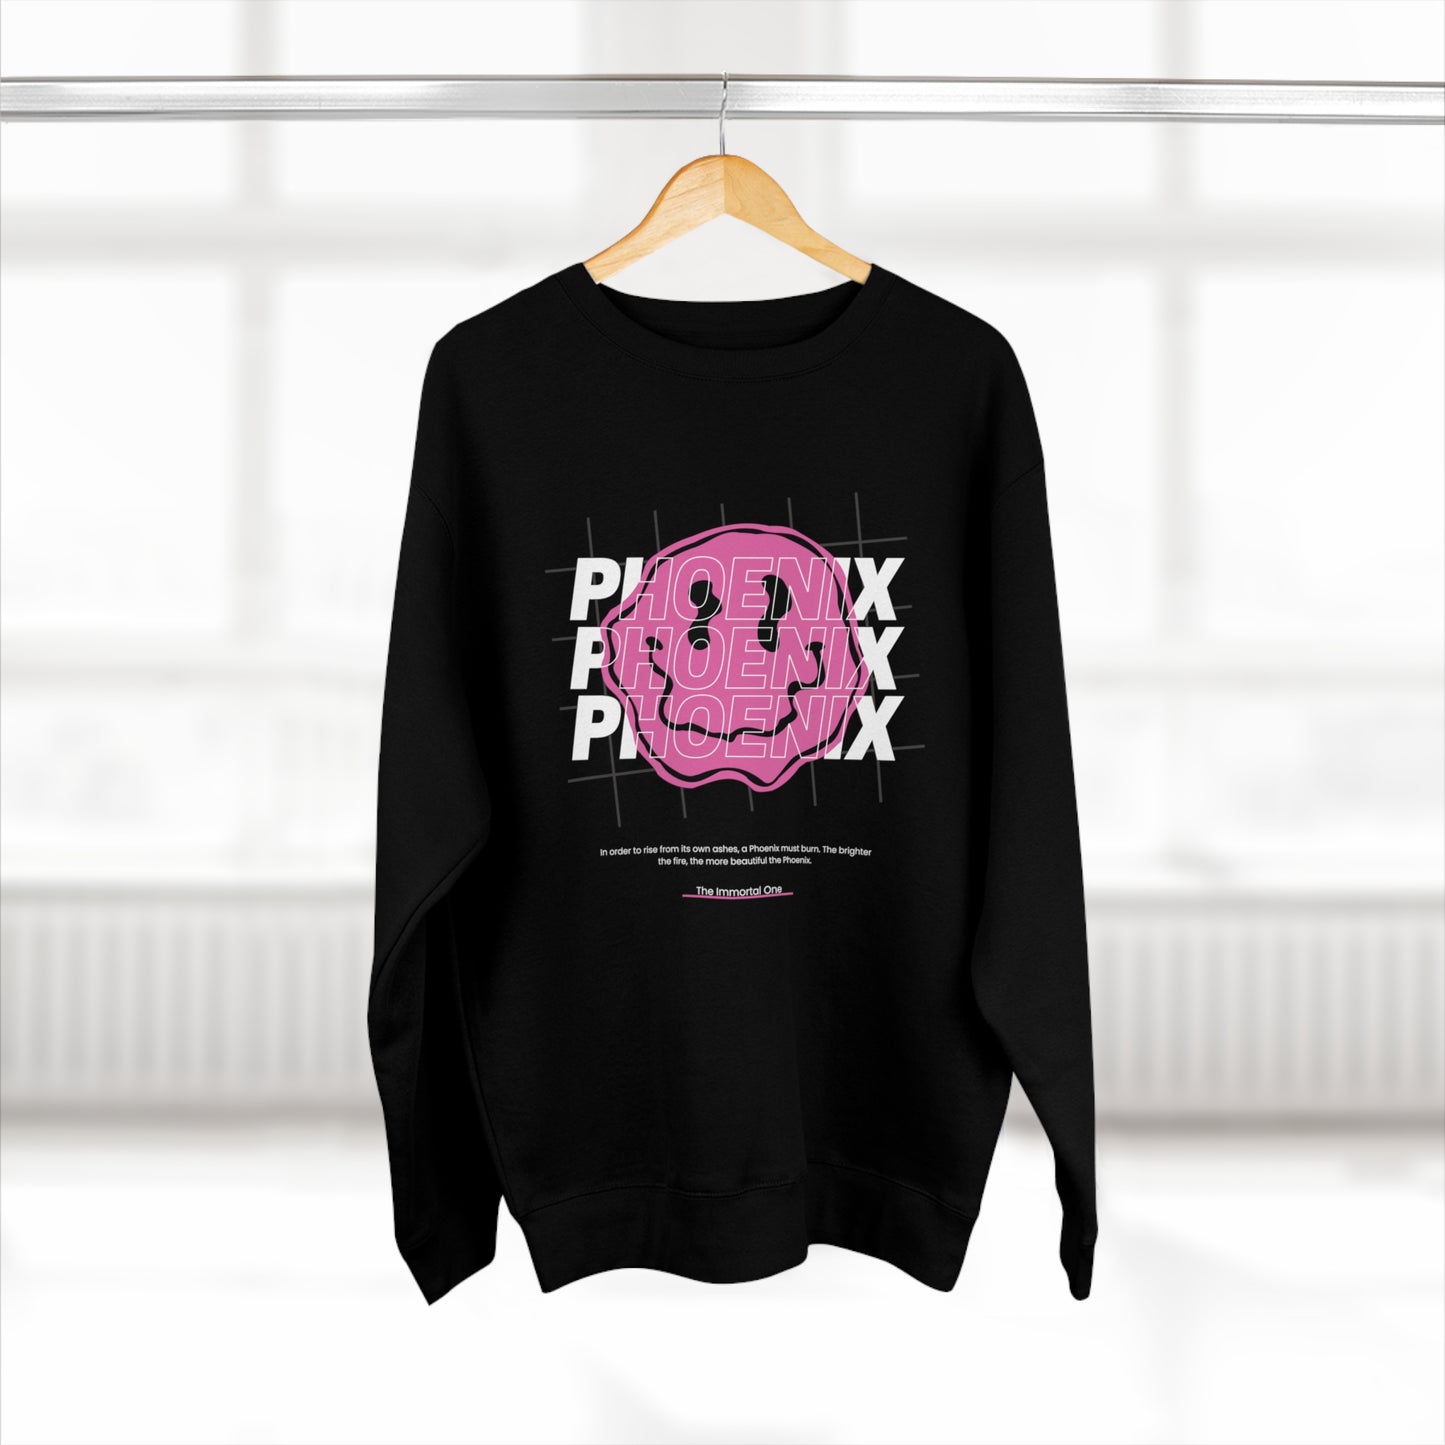 Triple Phoenix Sweatshirt